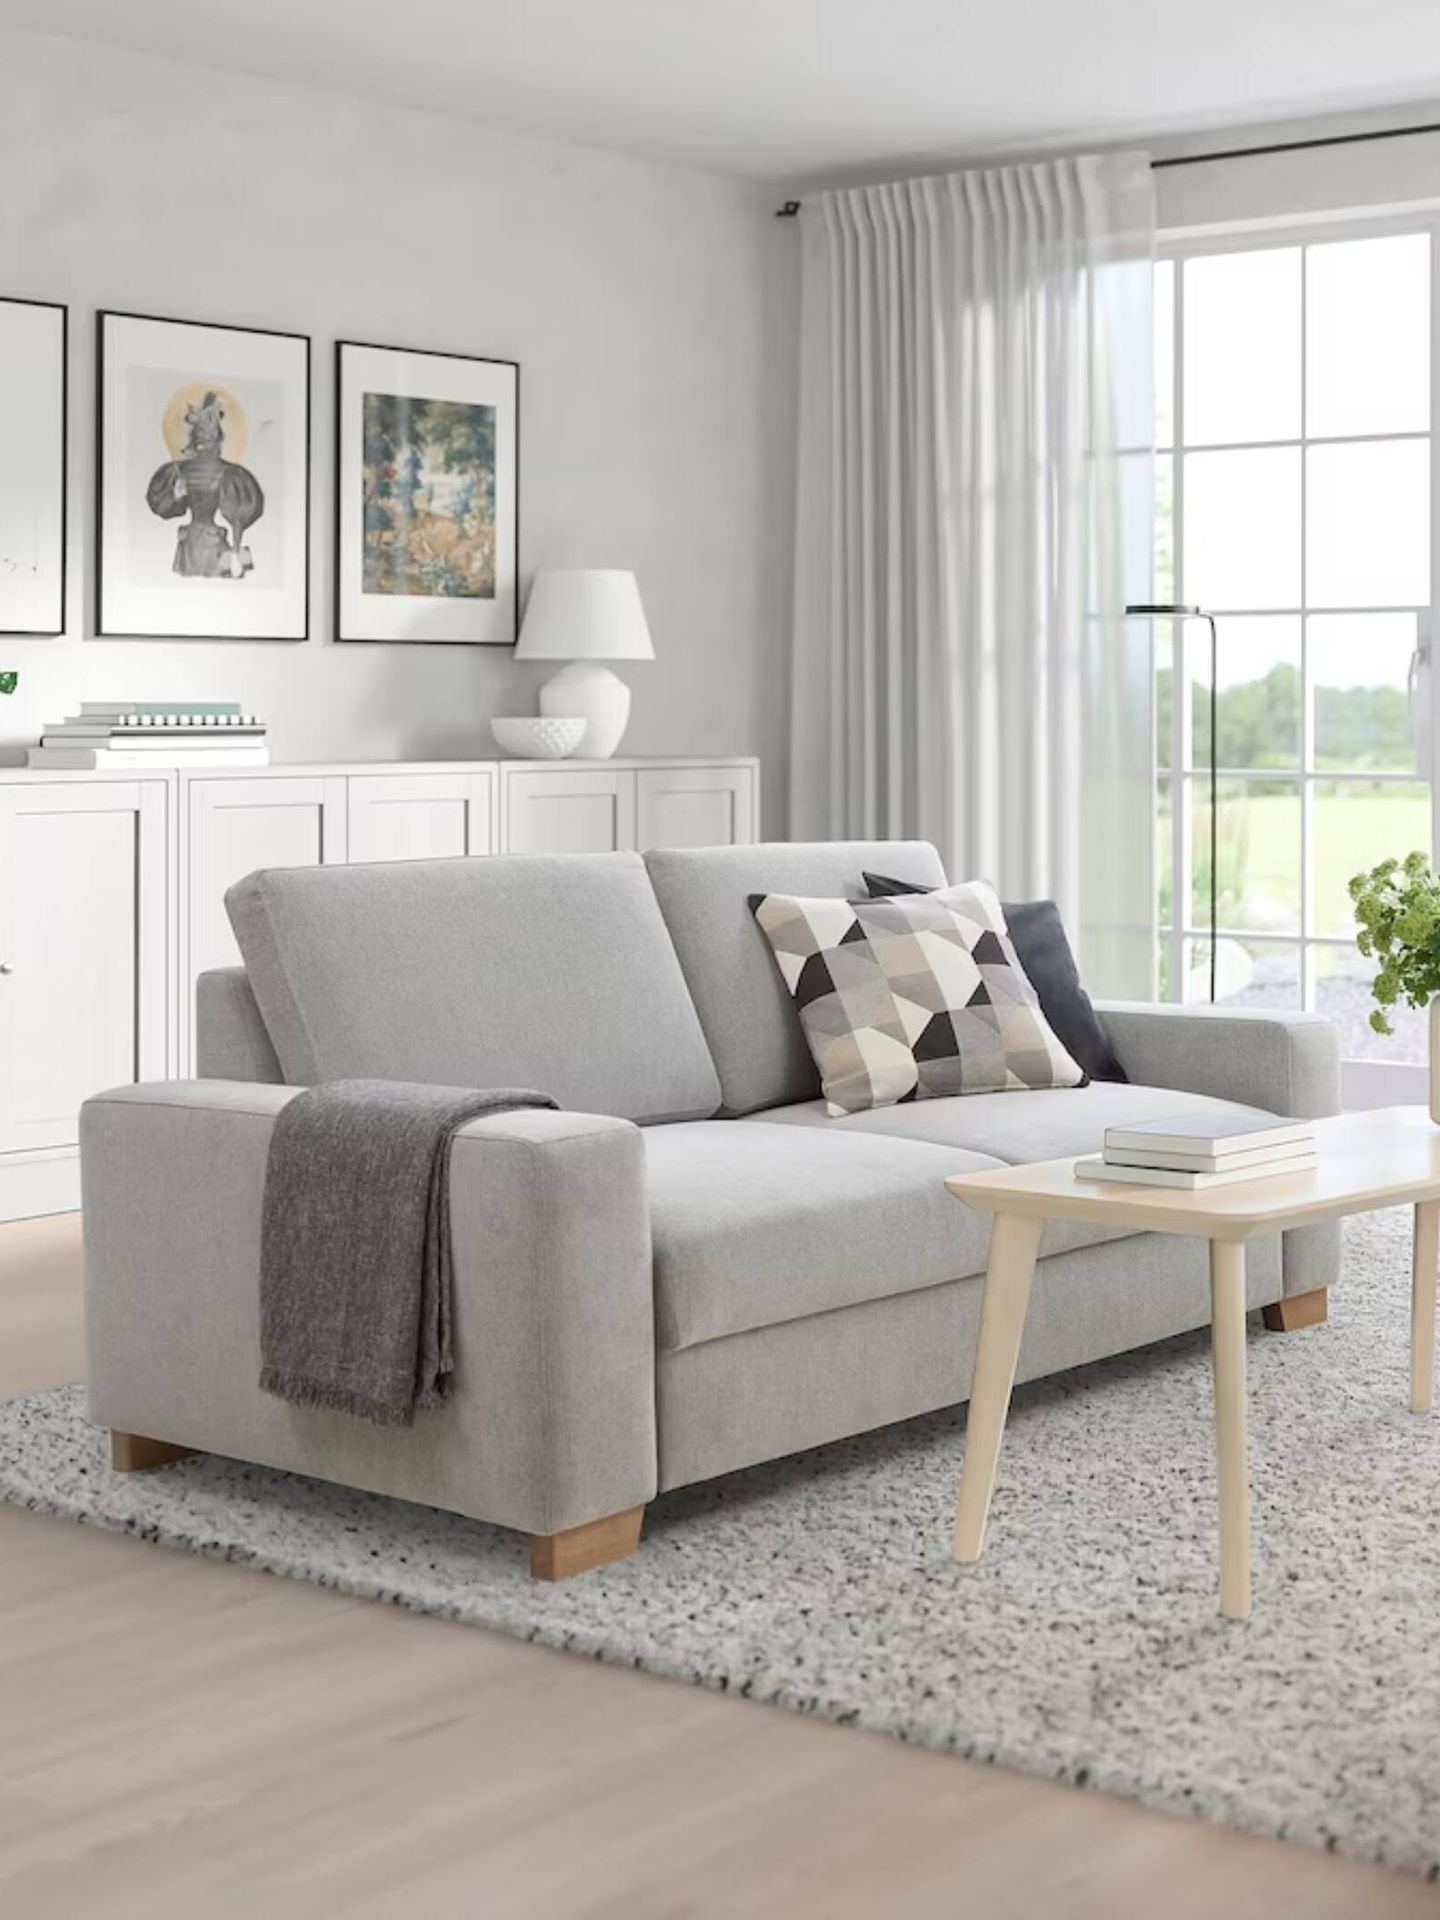 Nuevo sofá de Ikea para casas estilosas y de tendencia. (Cortesía/Ikea)